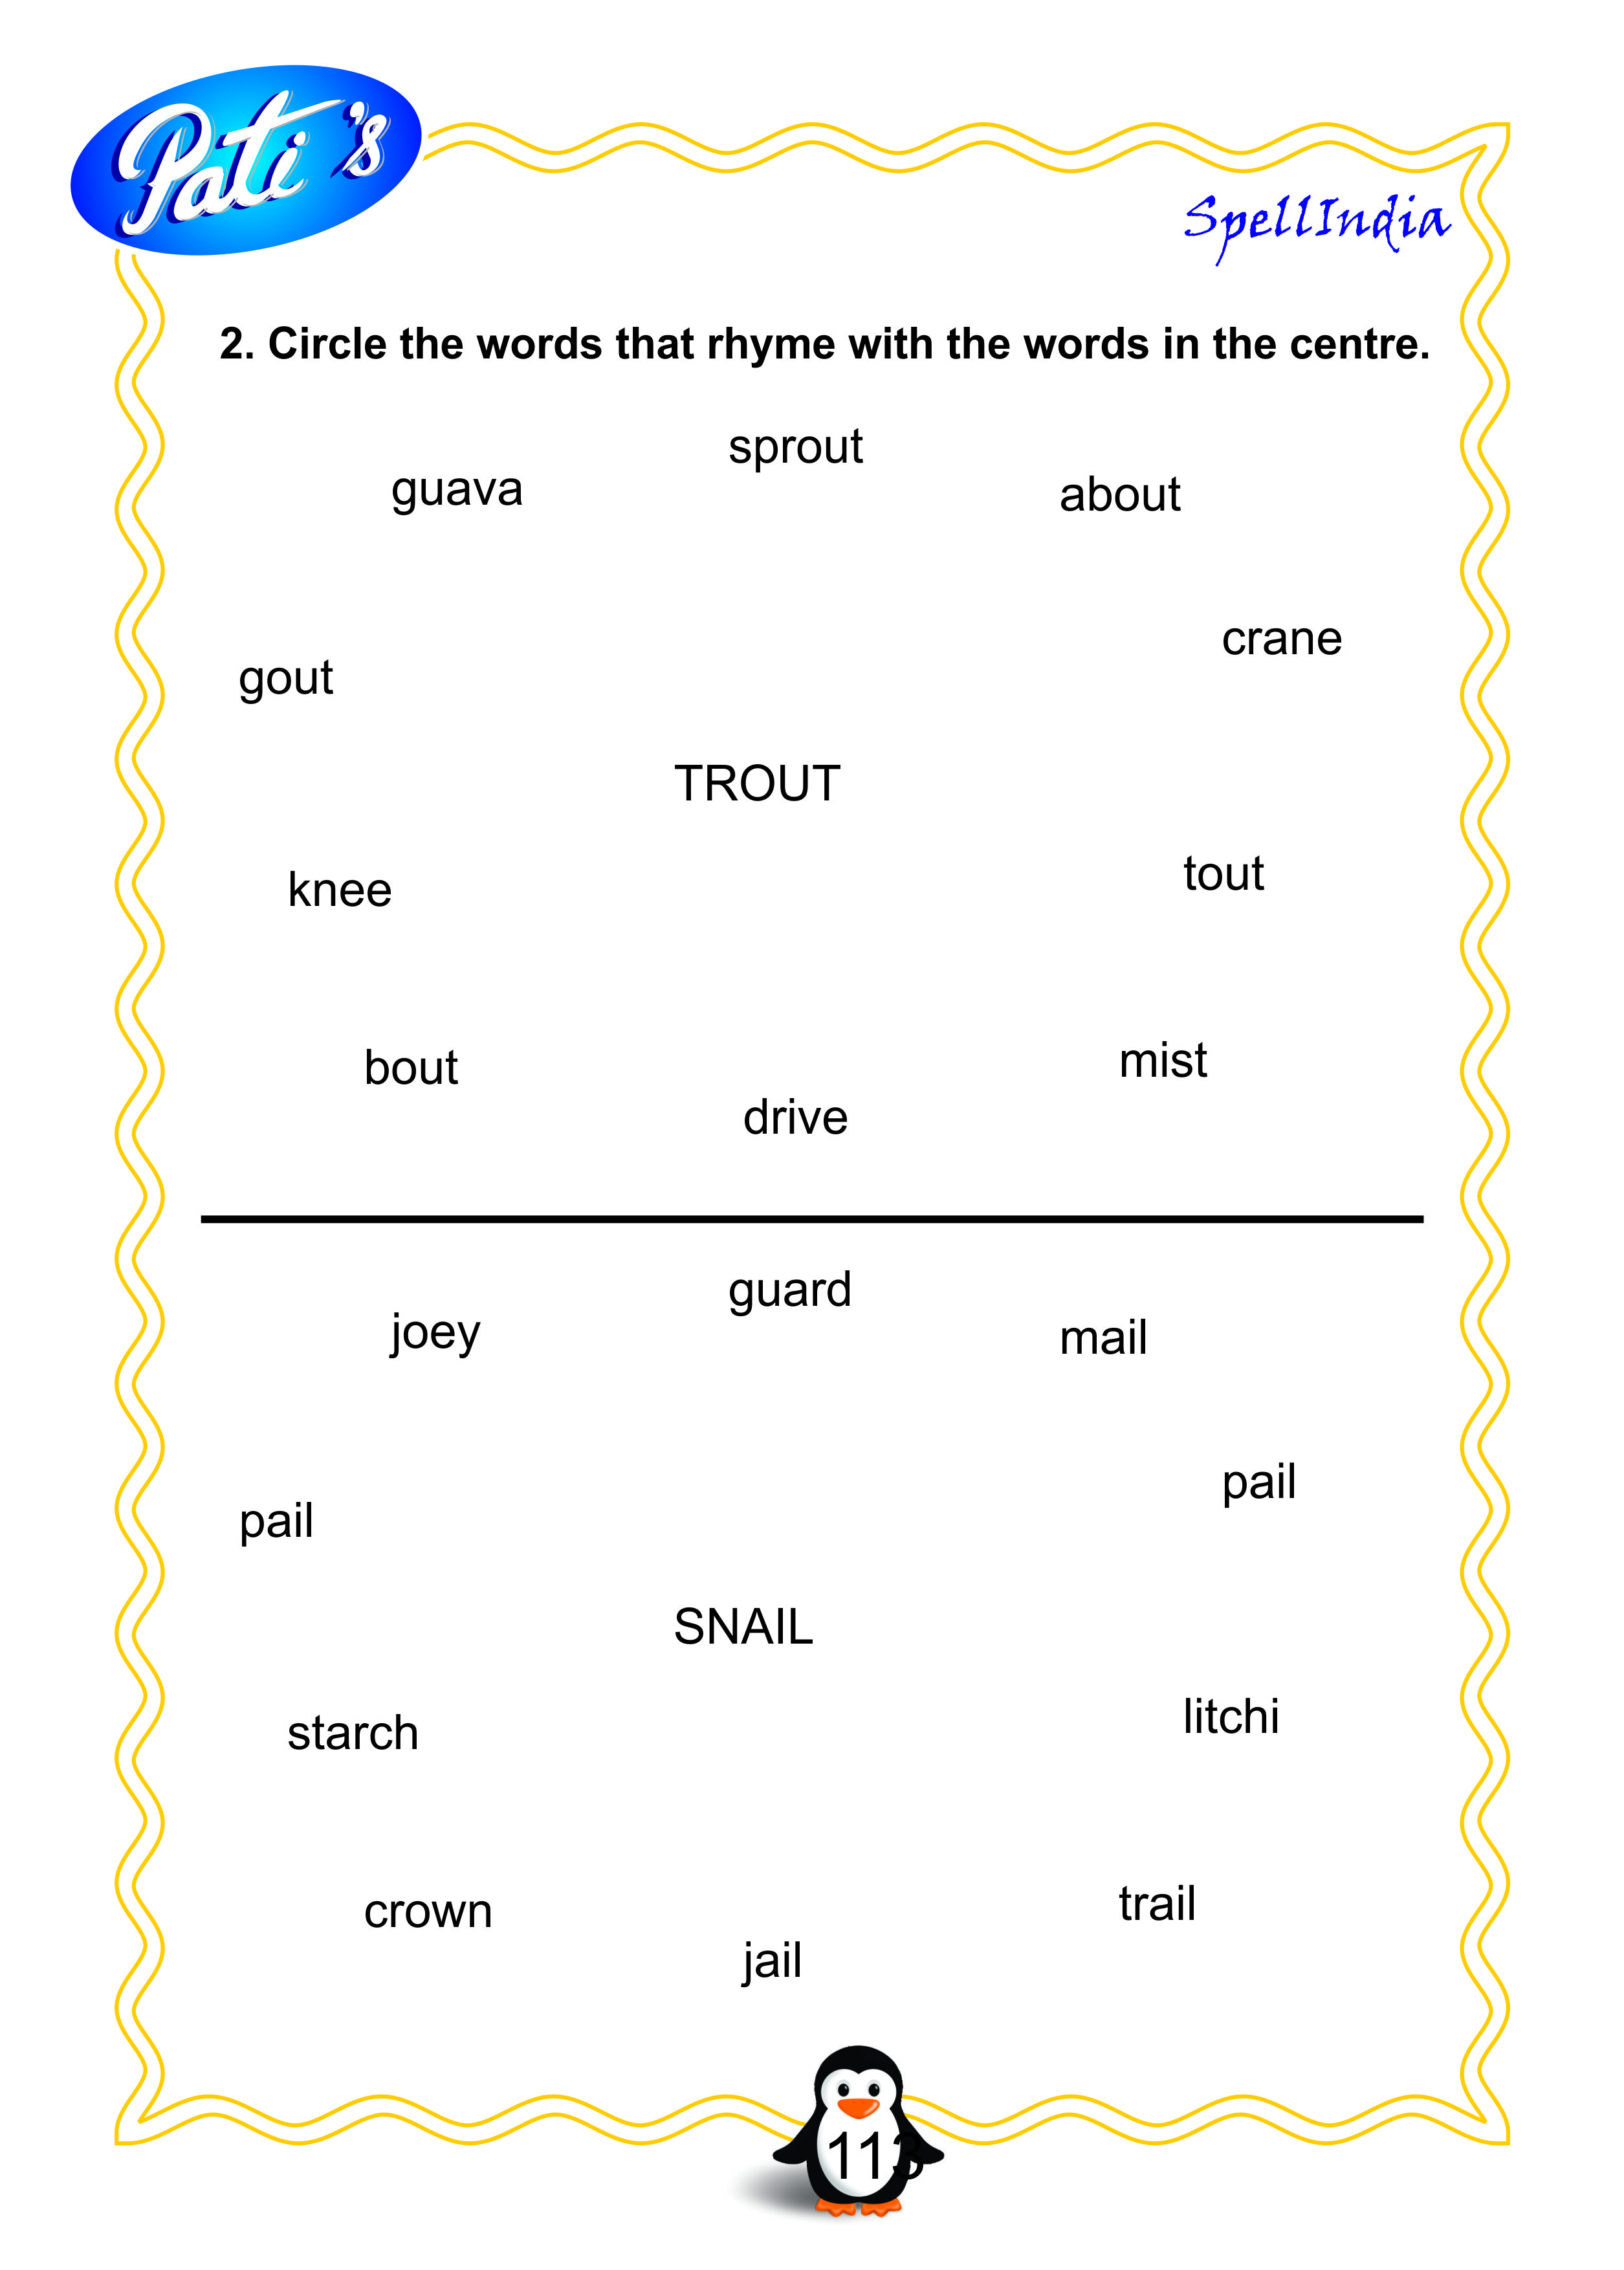 voca bee vocabulary for kids